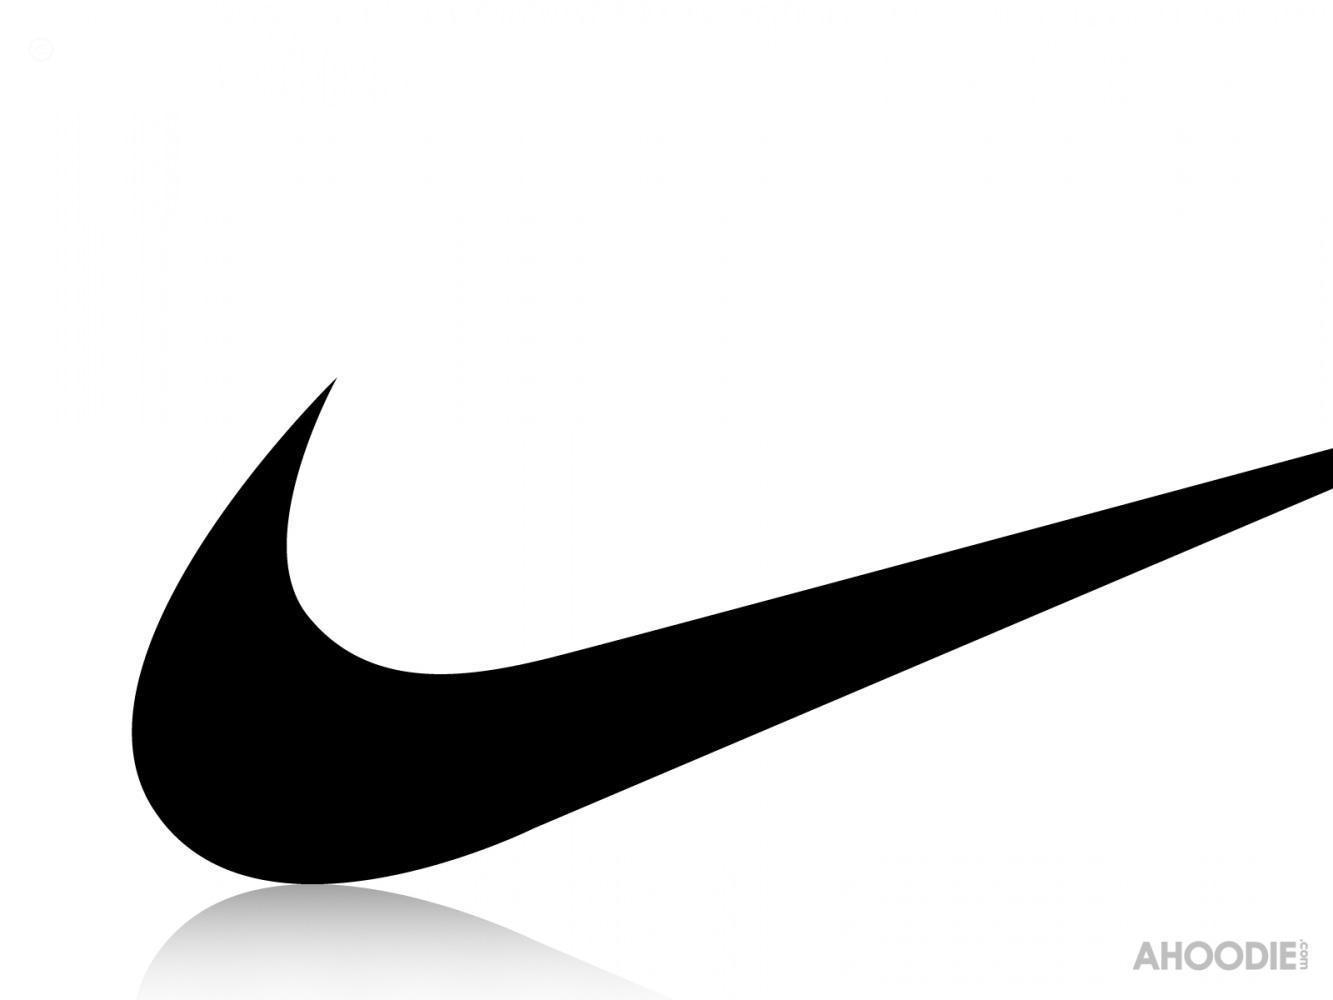 Nike Swoosh Logo - Nike Swoosh Wallpapers - Wallpaper Cave